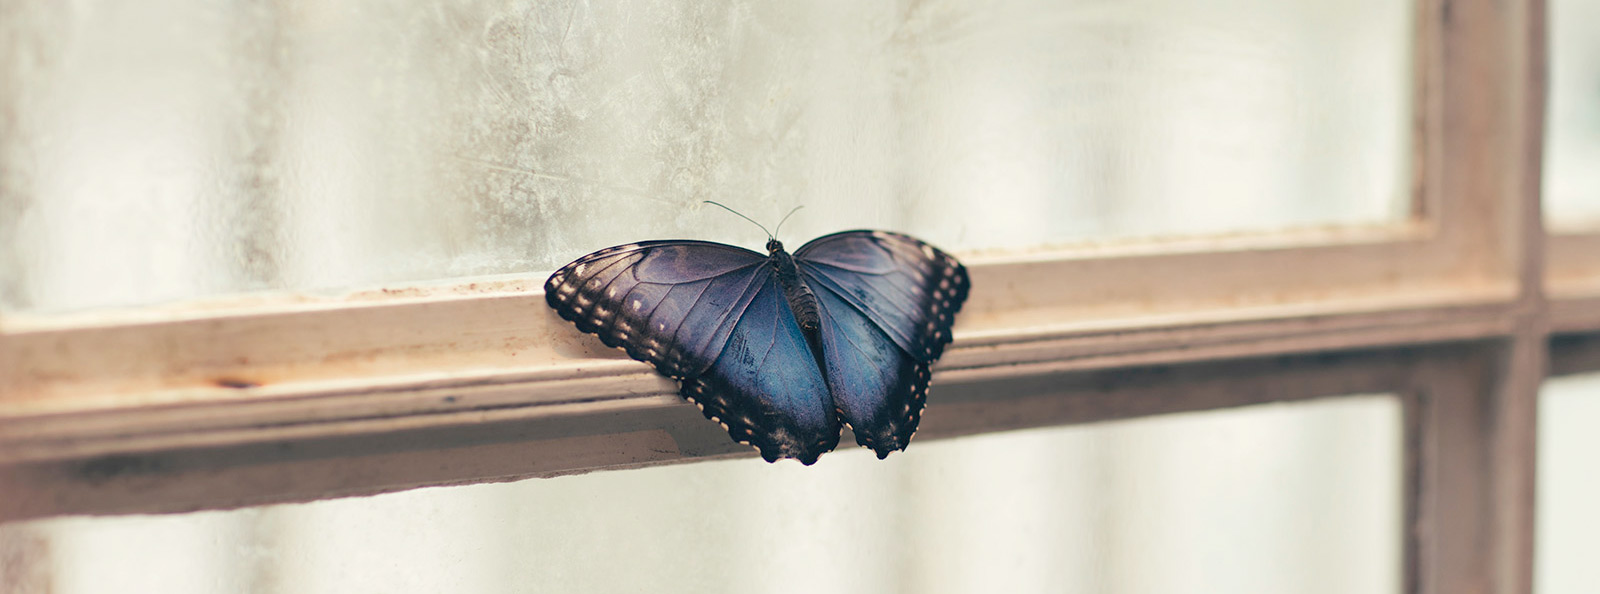 Butterflies / moths